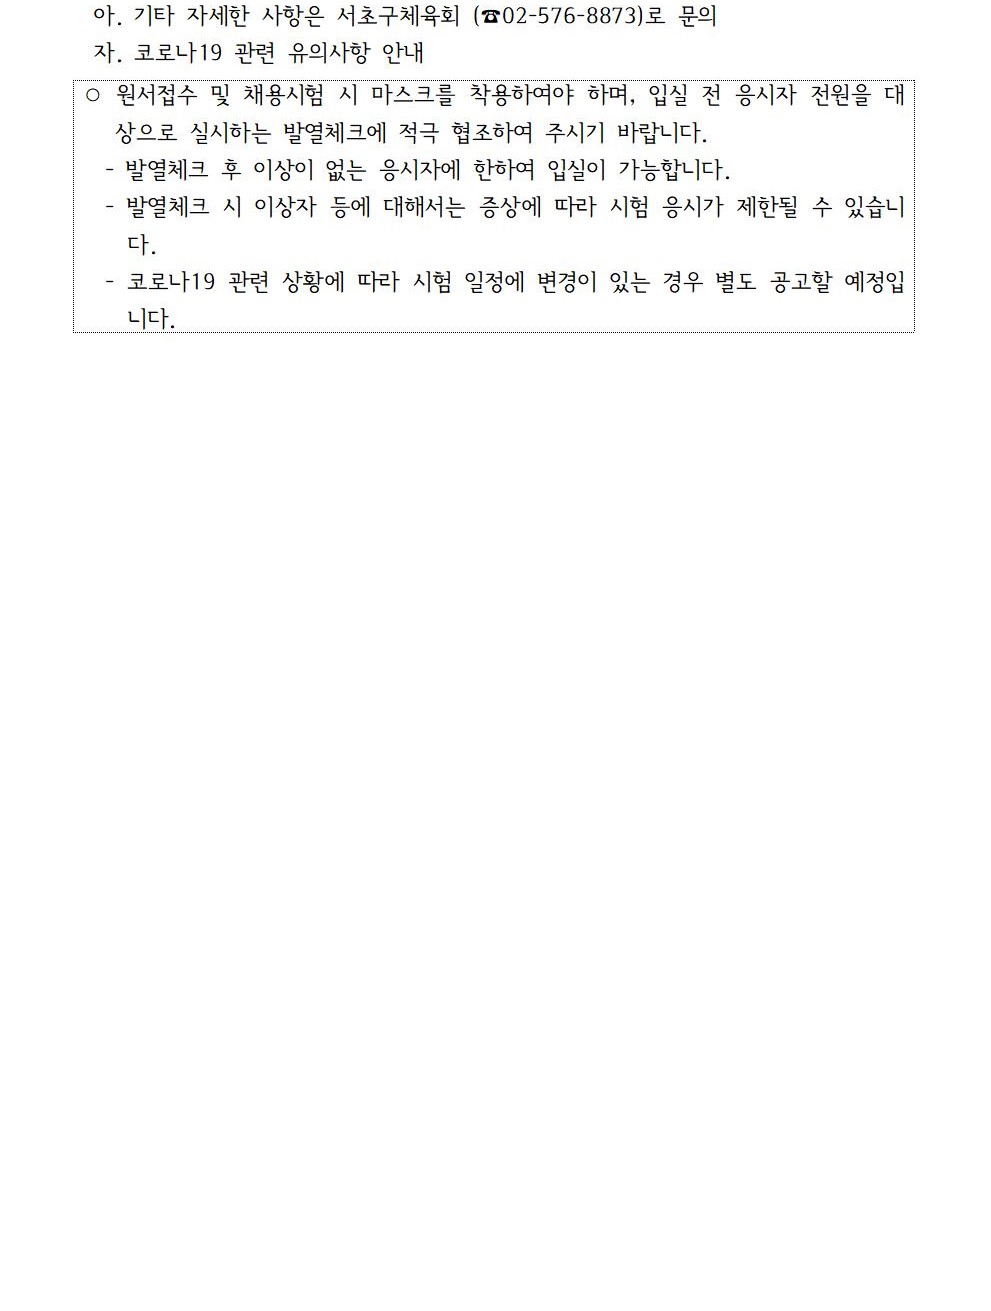 서초구체육회 1인1스포츠 강사 채용 공고문004 (2).jpg